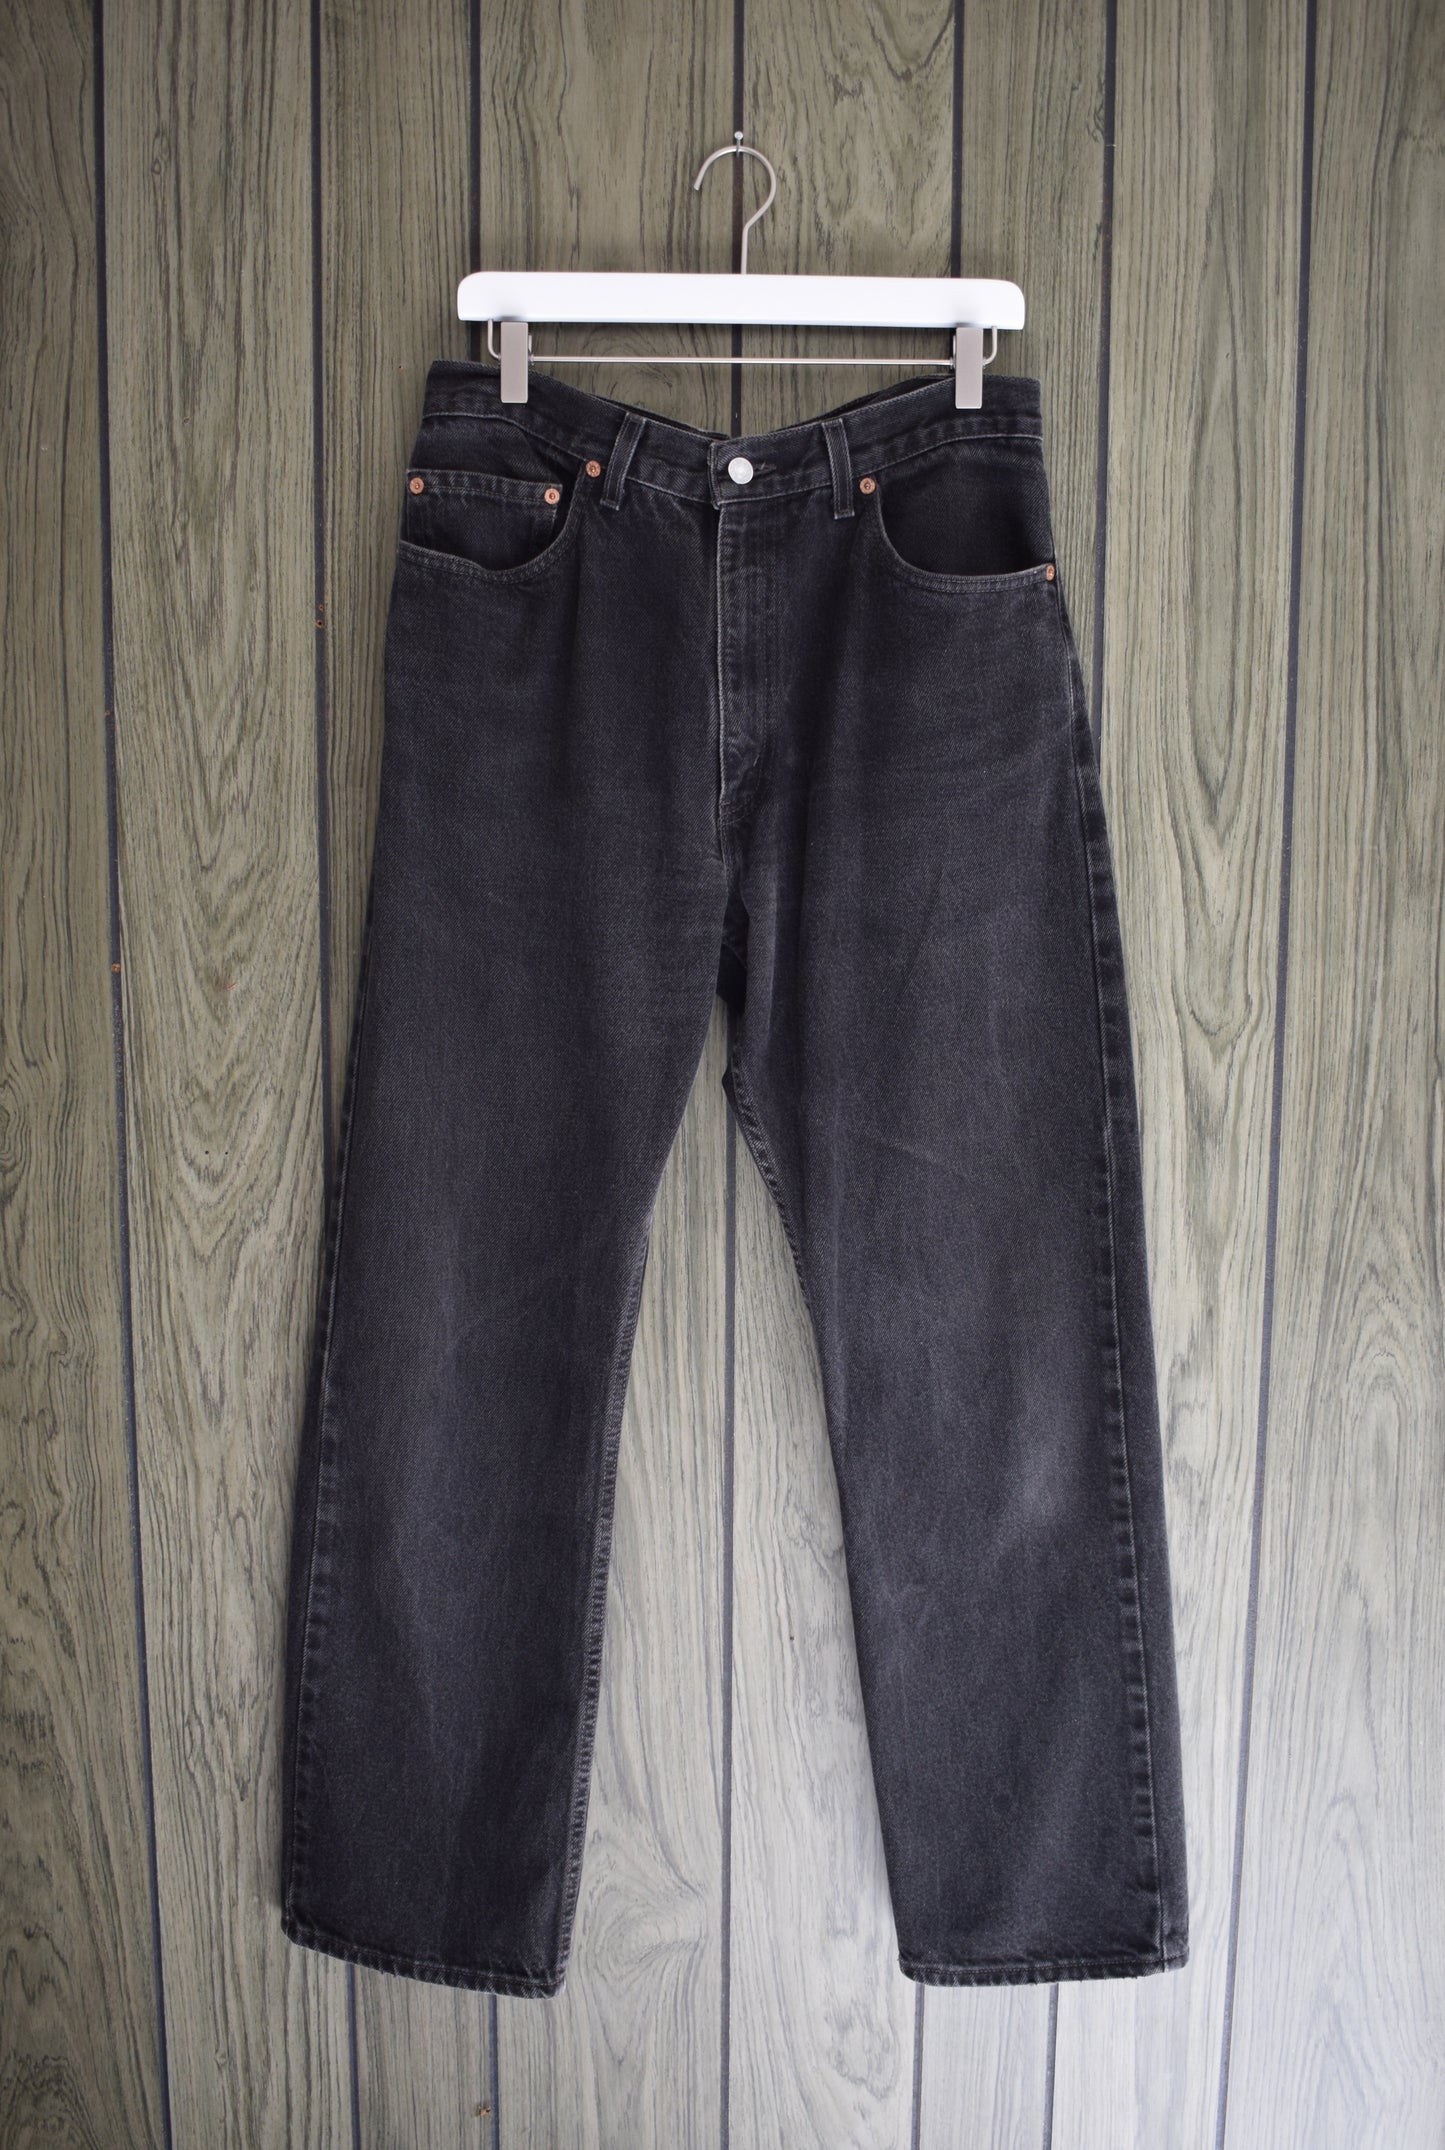 Vintage Levi's 505s - Black | 34" waist